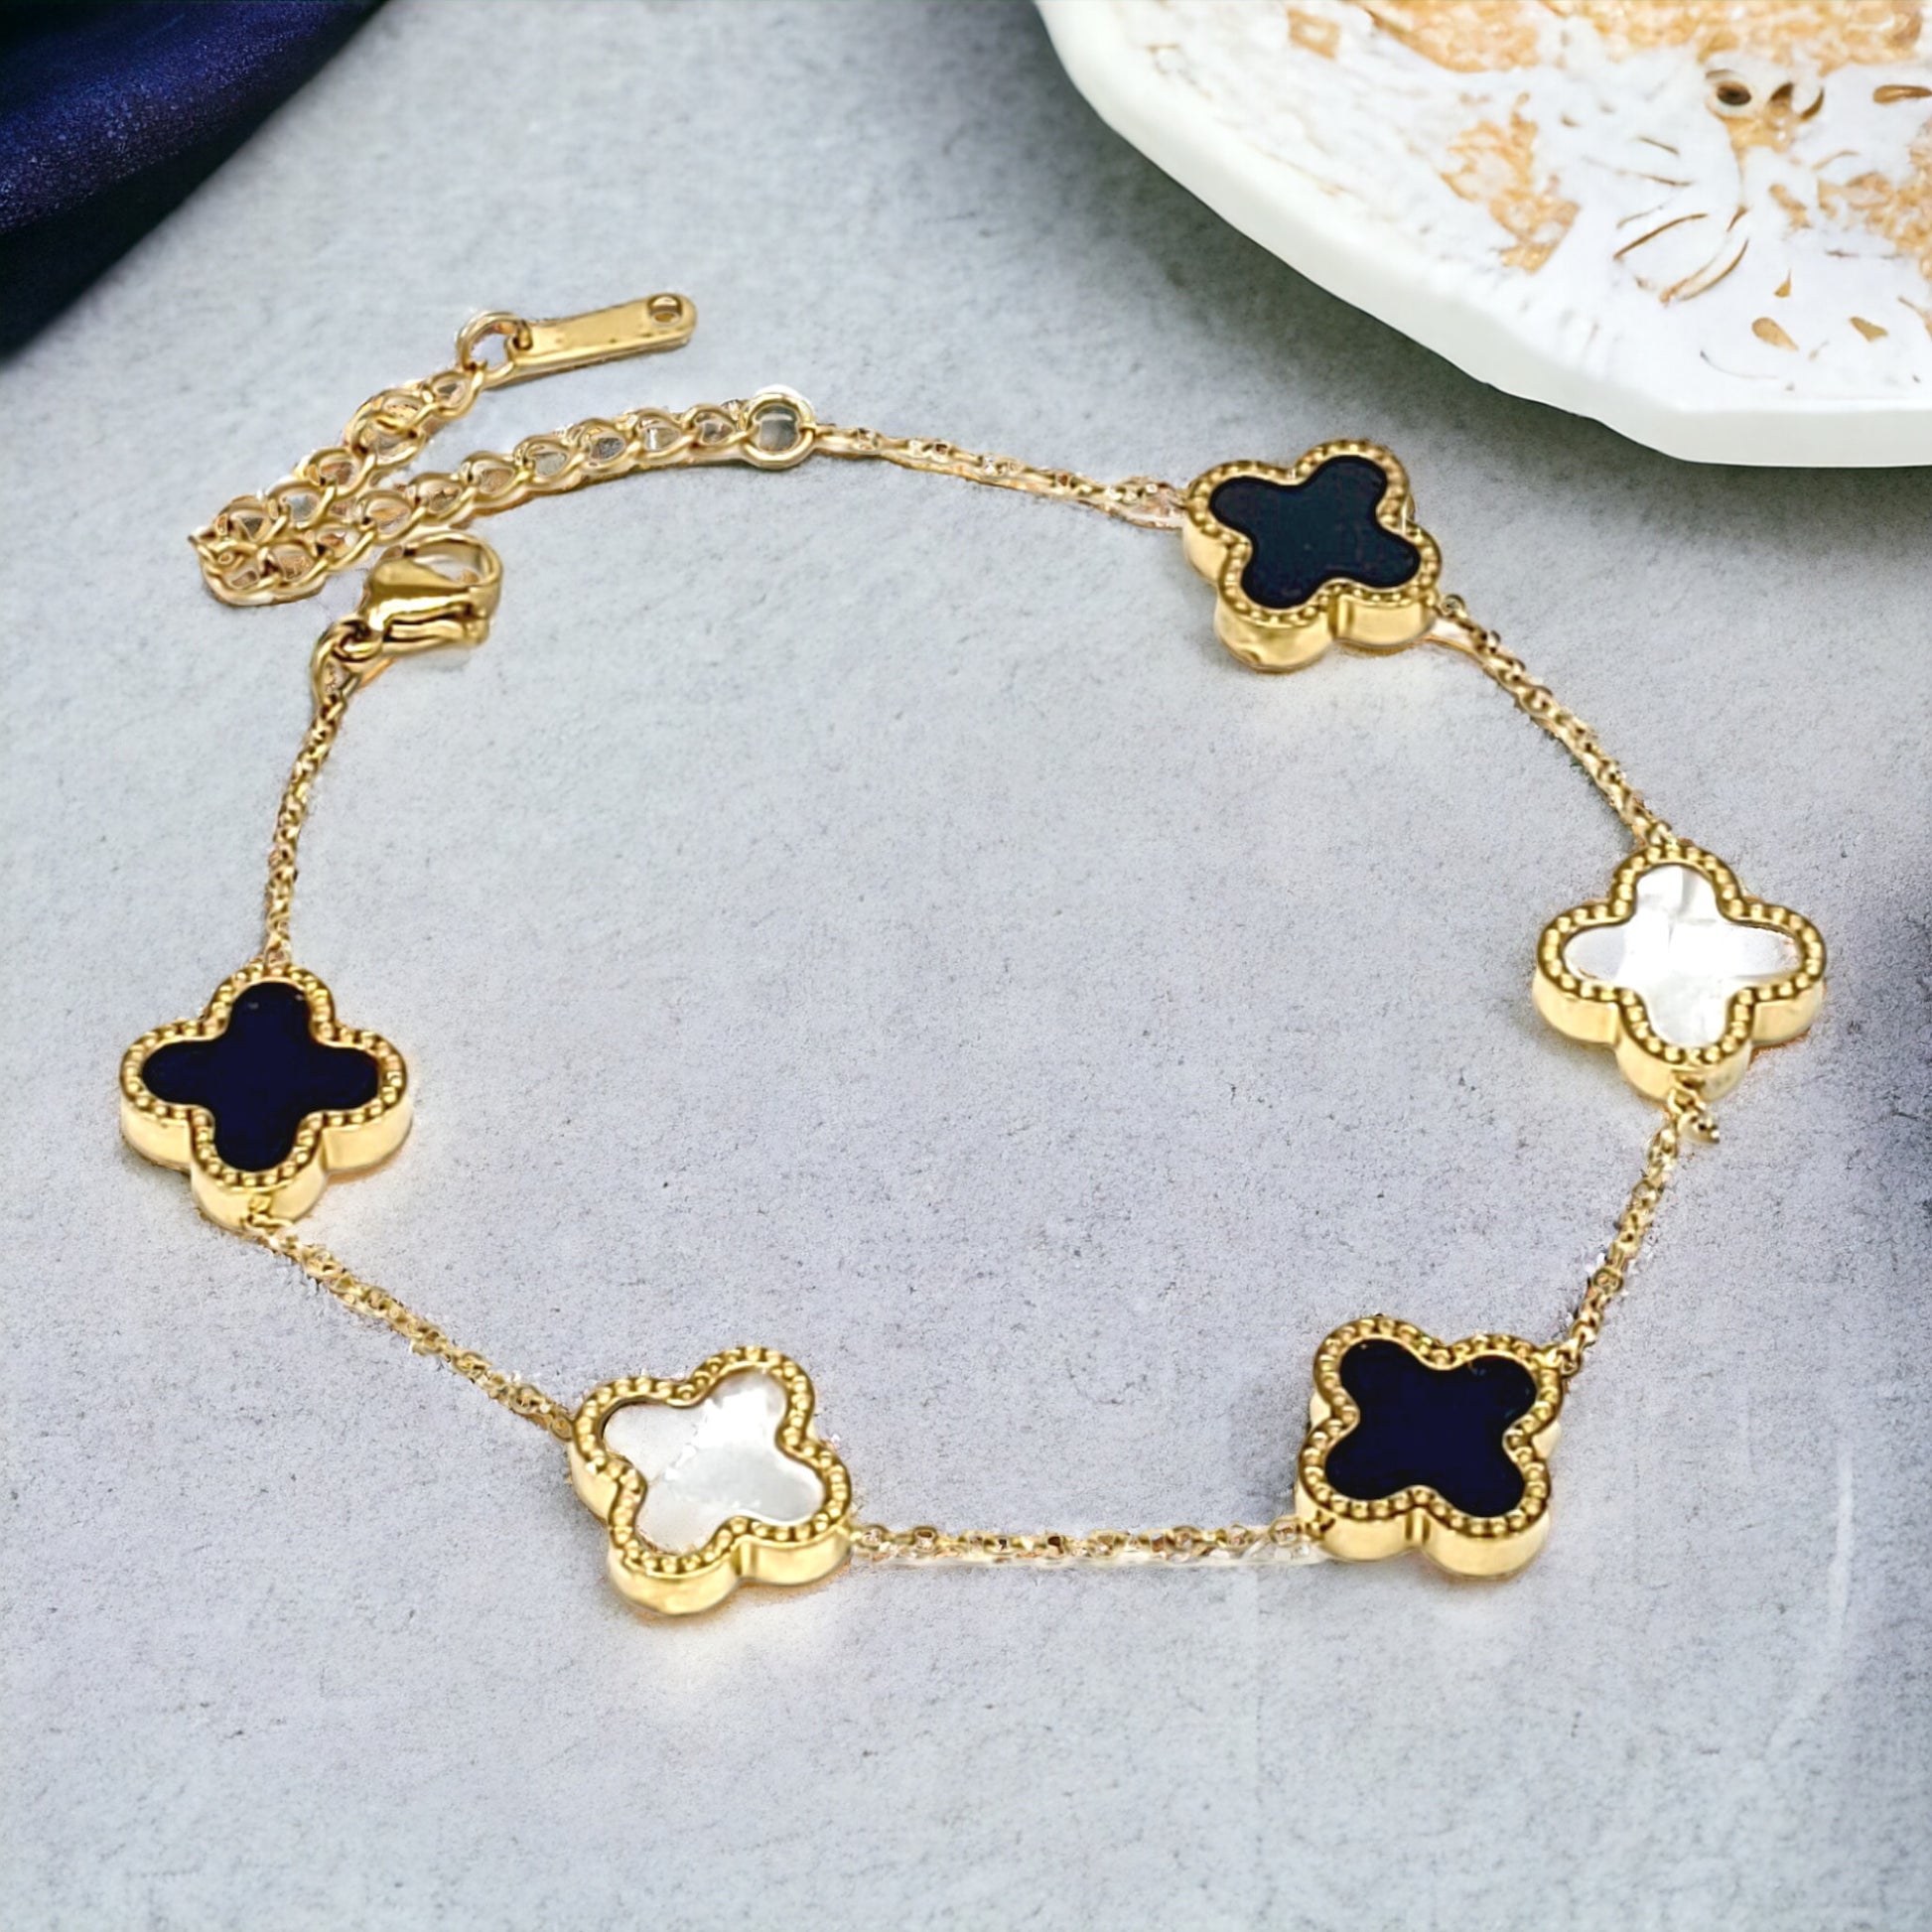 Gold Stainless Steel 5 Clover Bracelet - Marisa's Shopping Network 